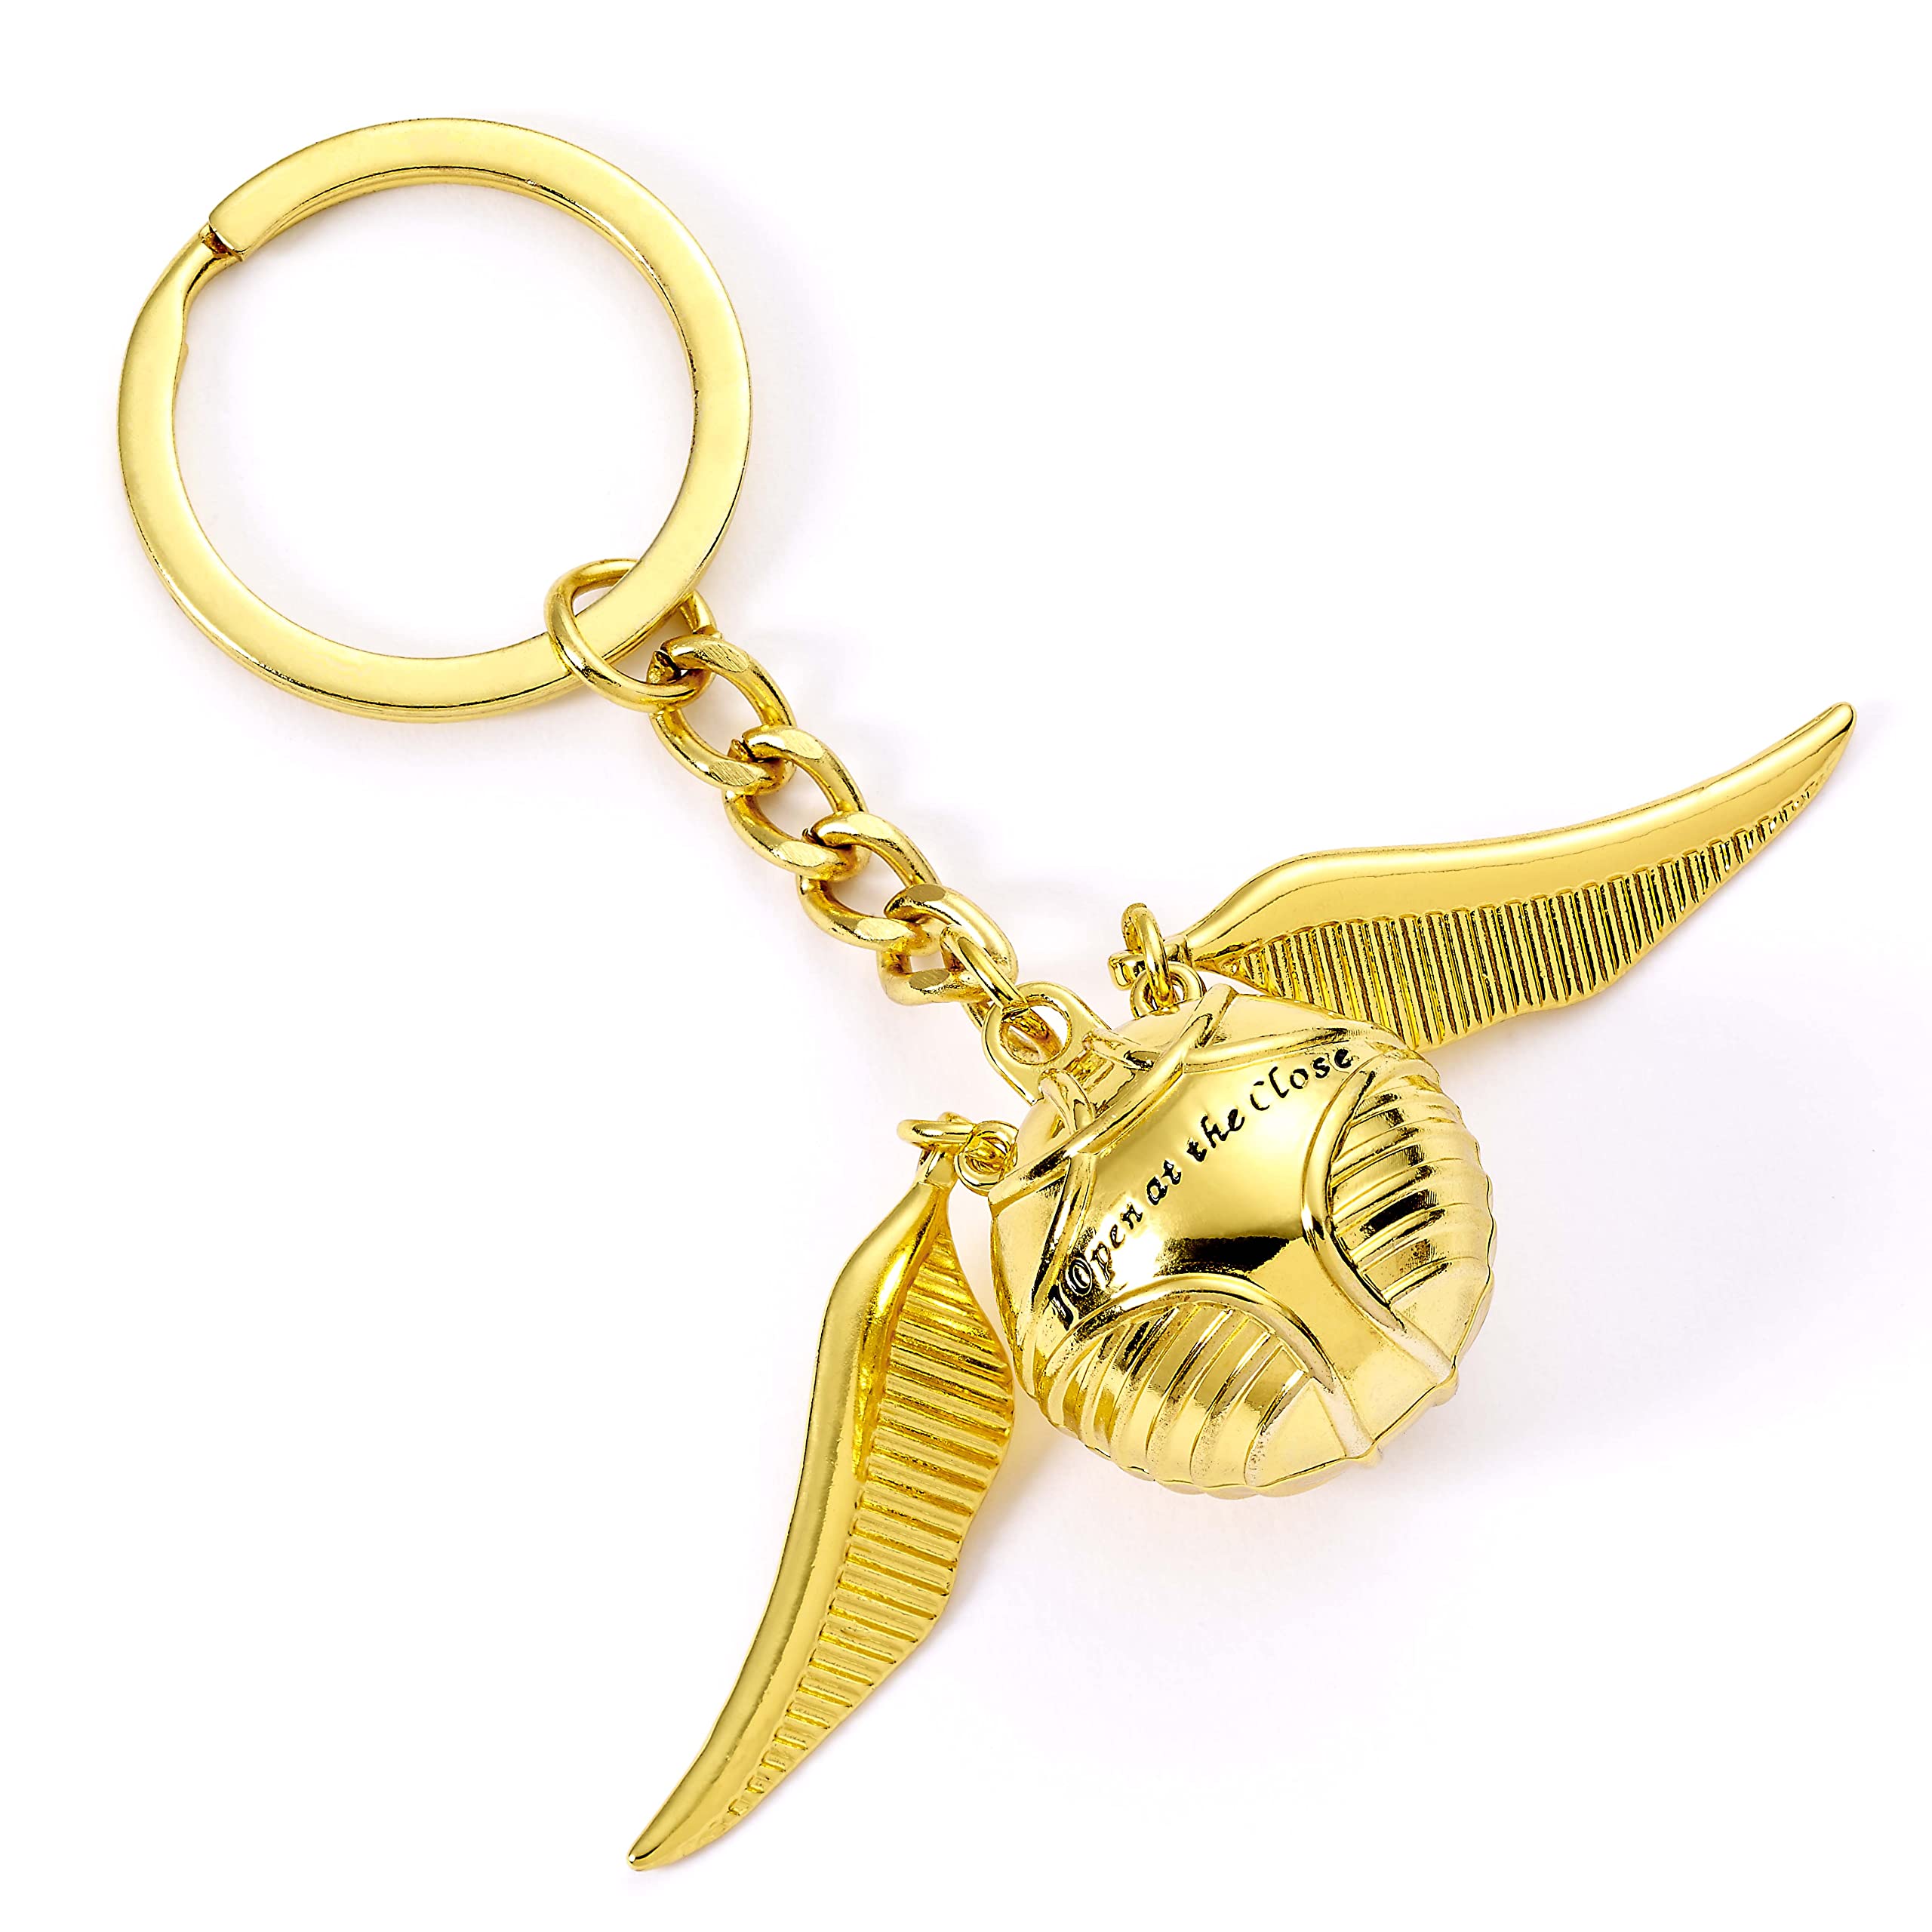 The Carat Shop: Harry Potter Golden Snitch Schlüsselanhänger 3D - Harry Potter Gadget, Metall, Kein Edelstein.